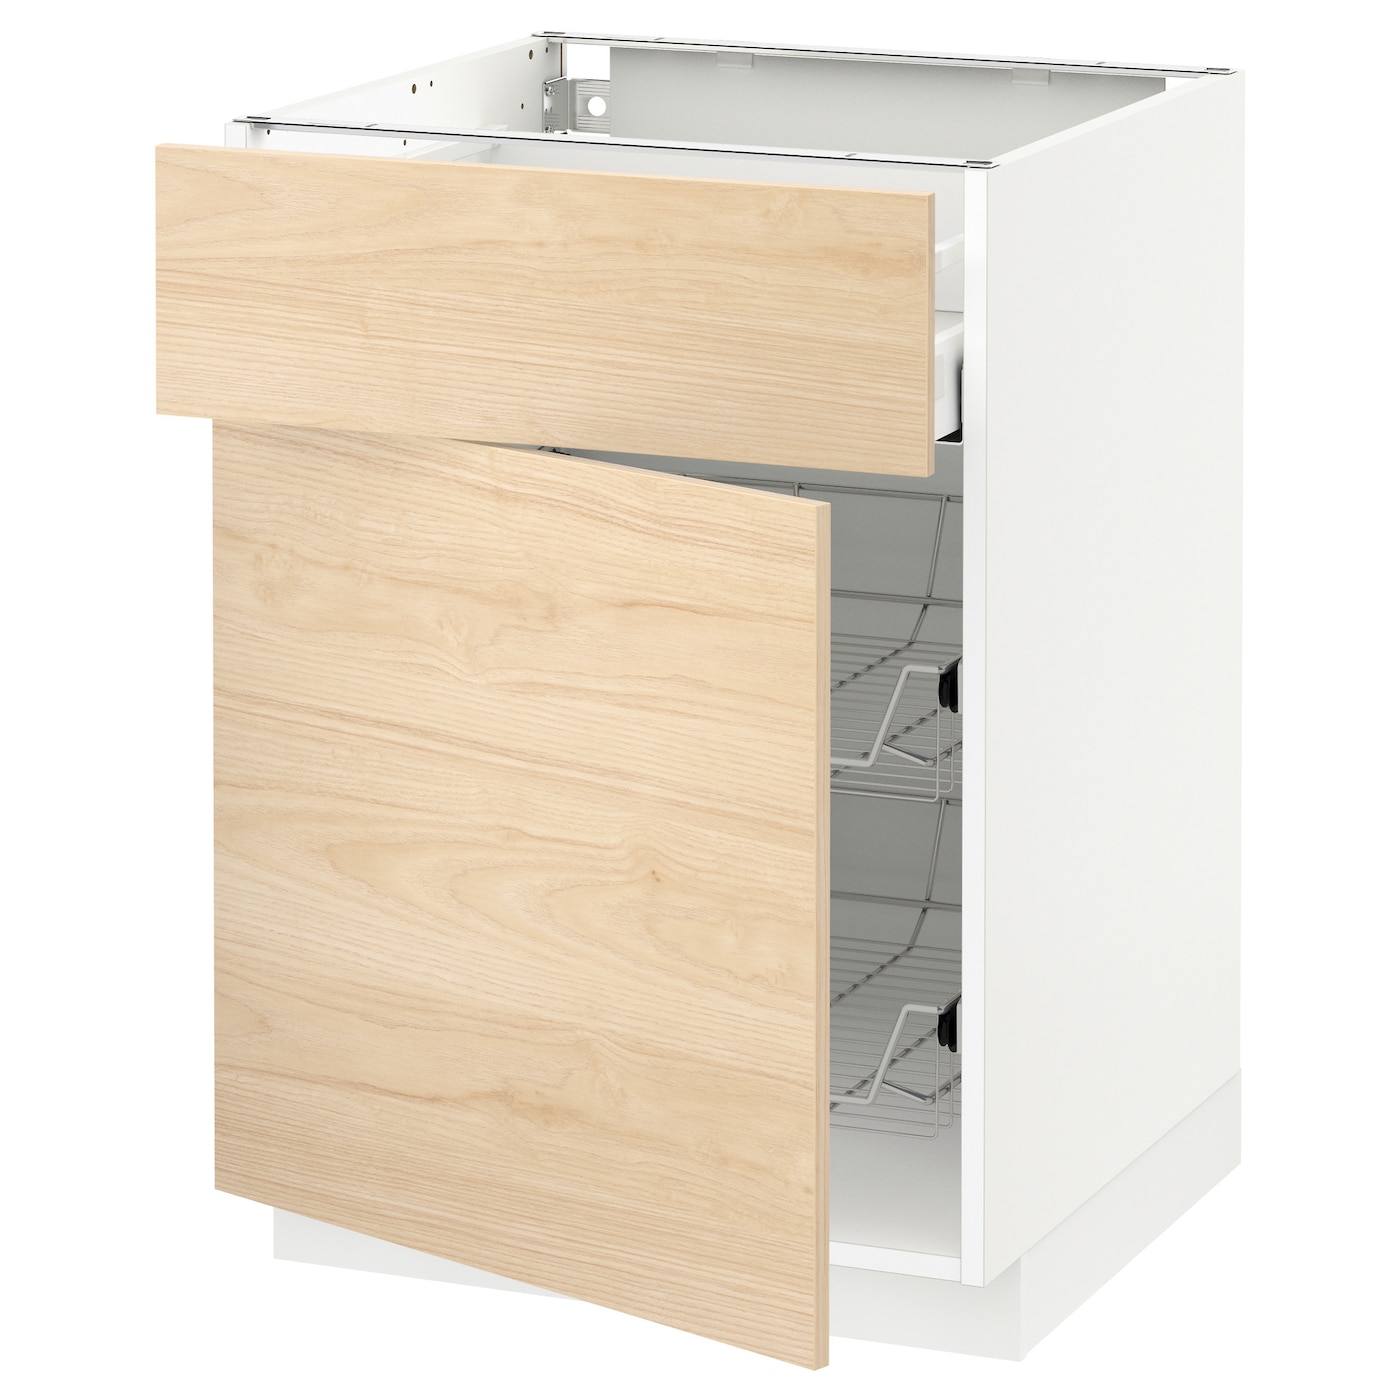 Напольный шкаф - METOD / MAXIMERA IKEA/ МЕТОД/ МАКСИМЕРА ИКЕА,  60х88 см, белый/под беленый дуб